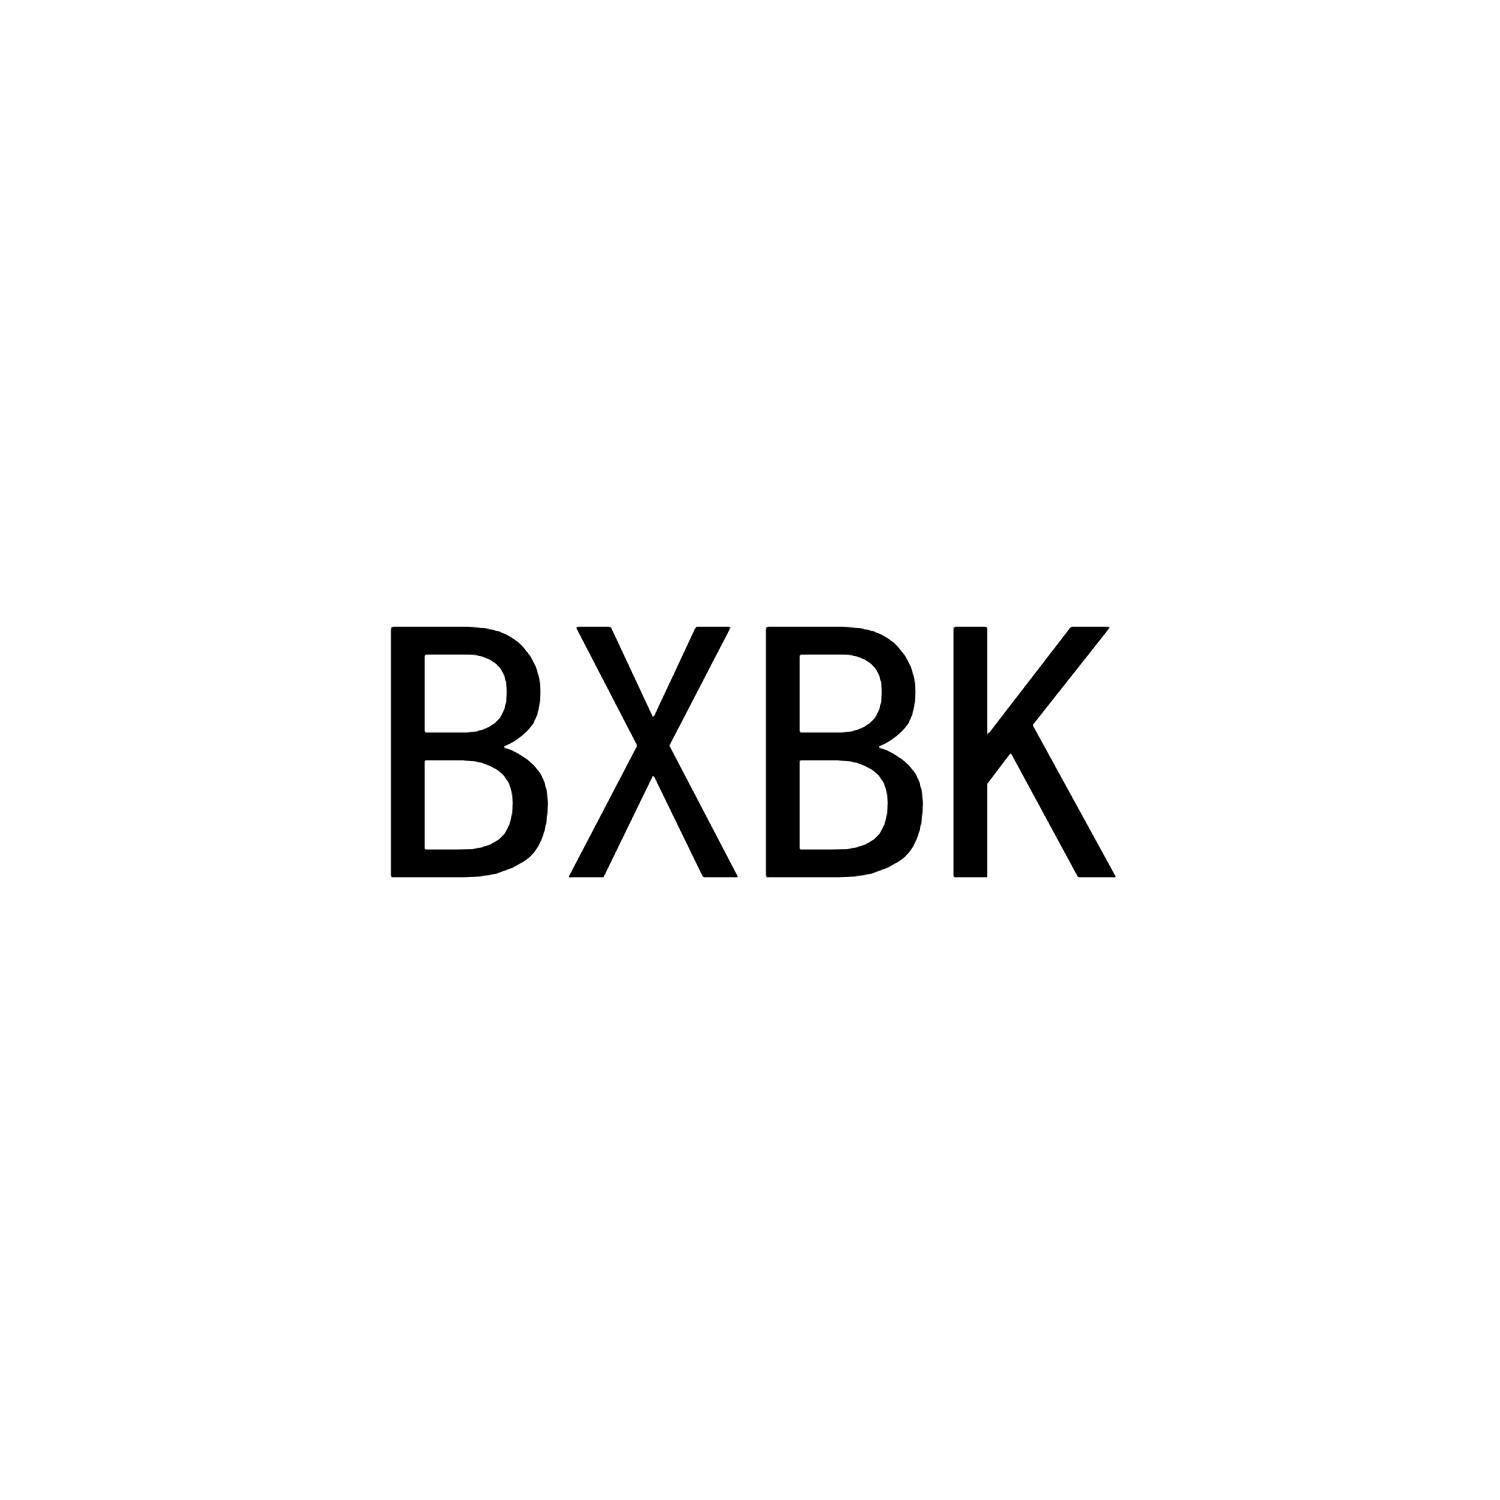 BXBK